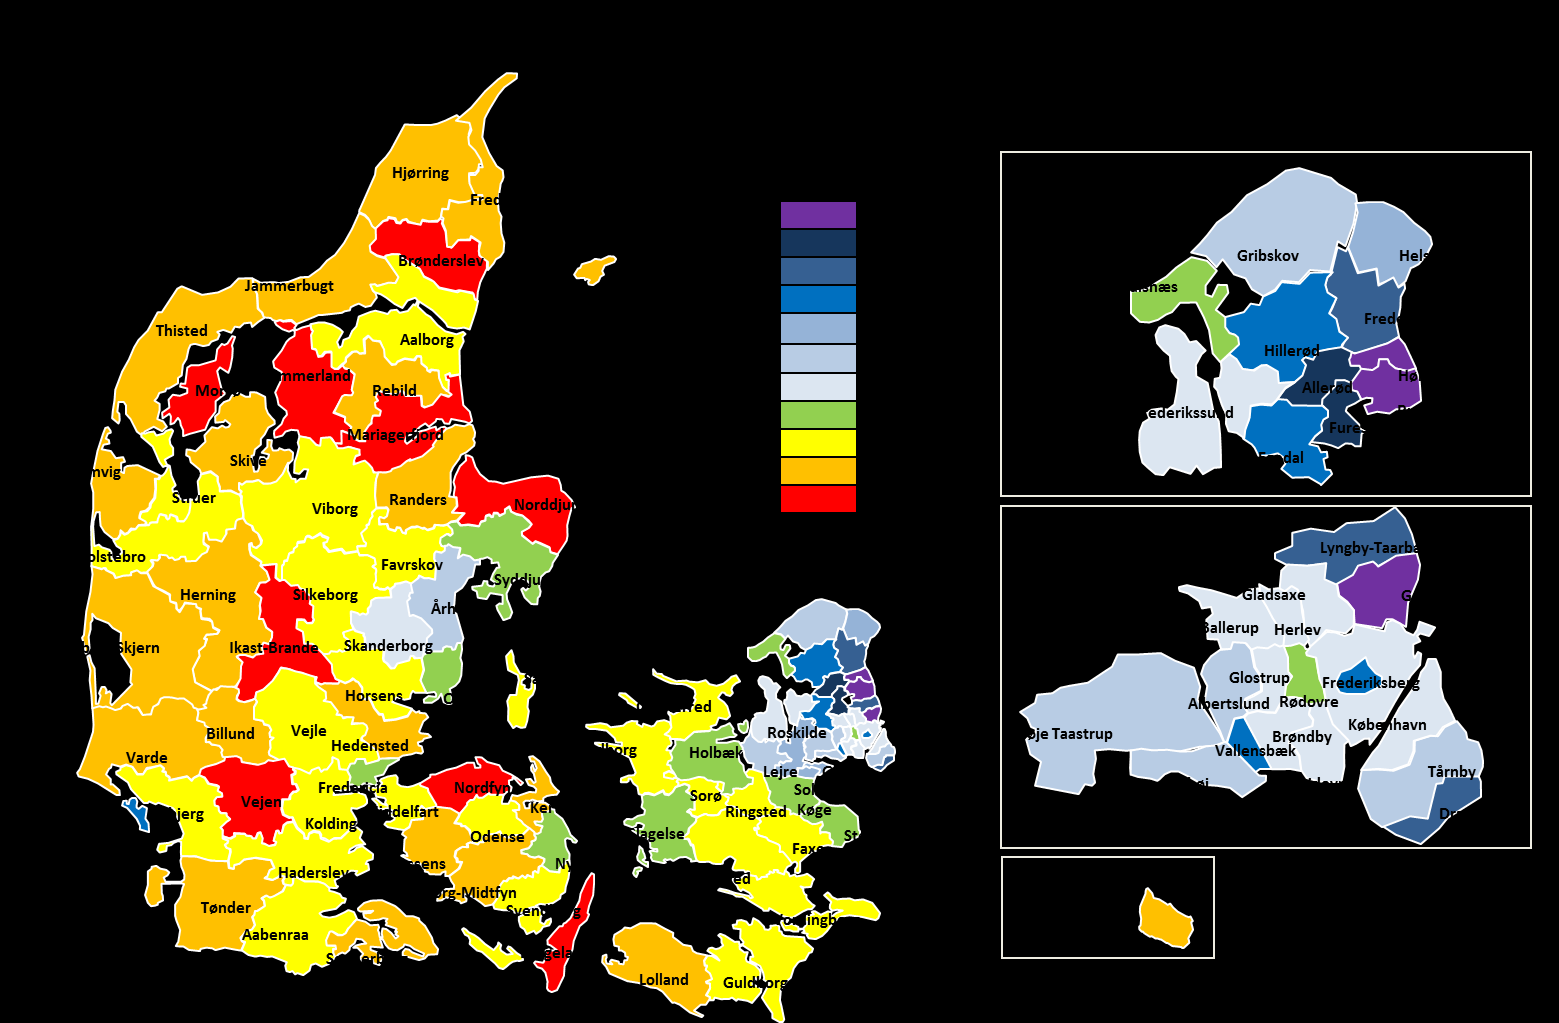 Kilde: www.statistikbanken.dk; Folk1, Pen33. Kommuner markeren med grøn er kommuner, hvor andelen med fuldt pensionstillæg ligger omkring gennemsnittet på 54%.